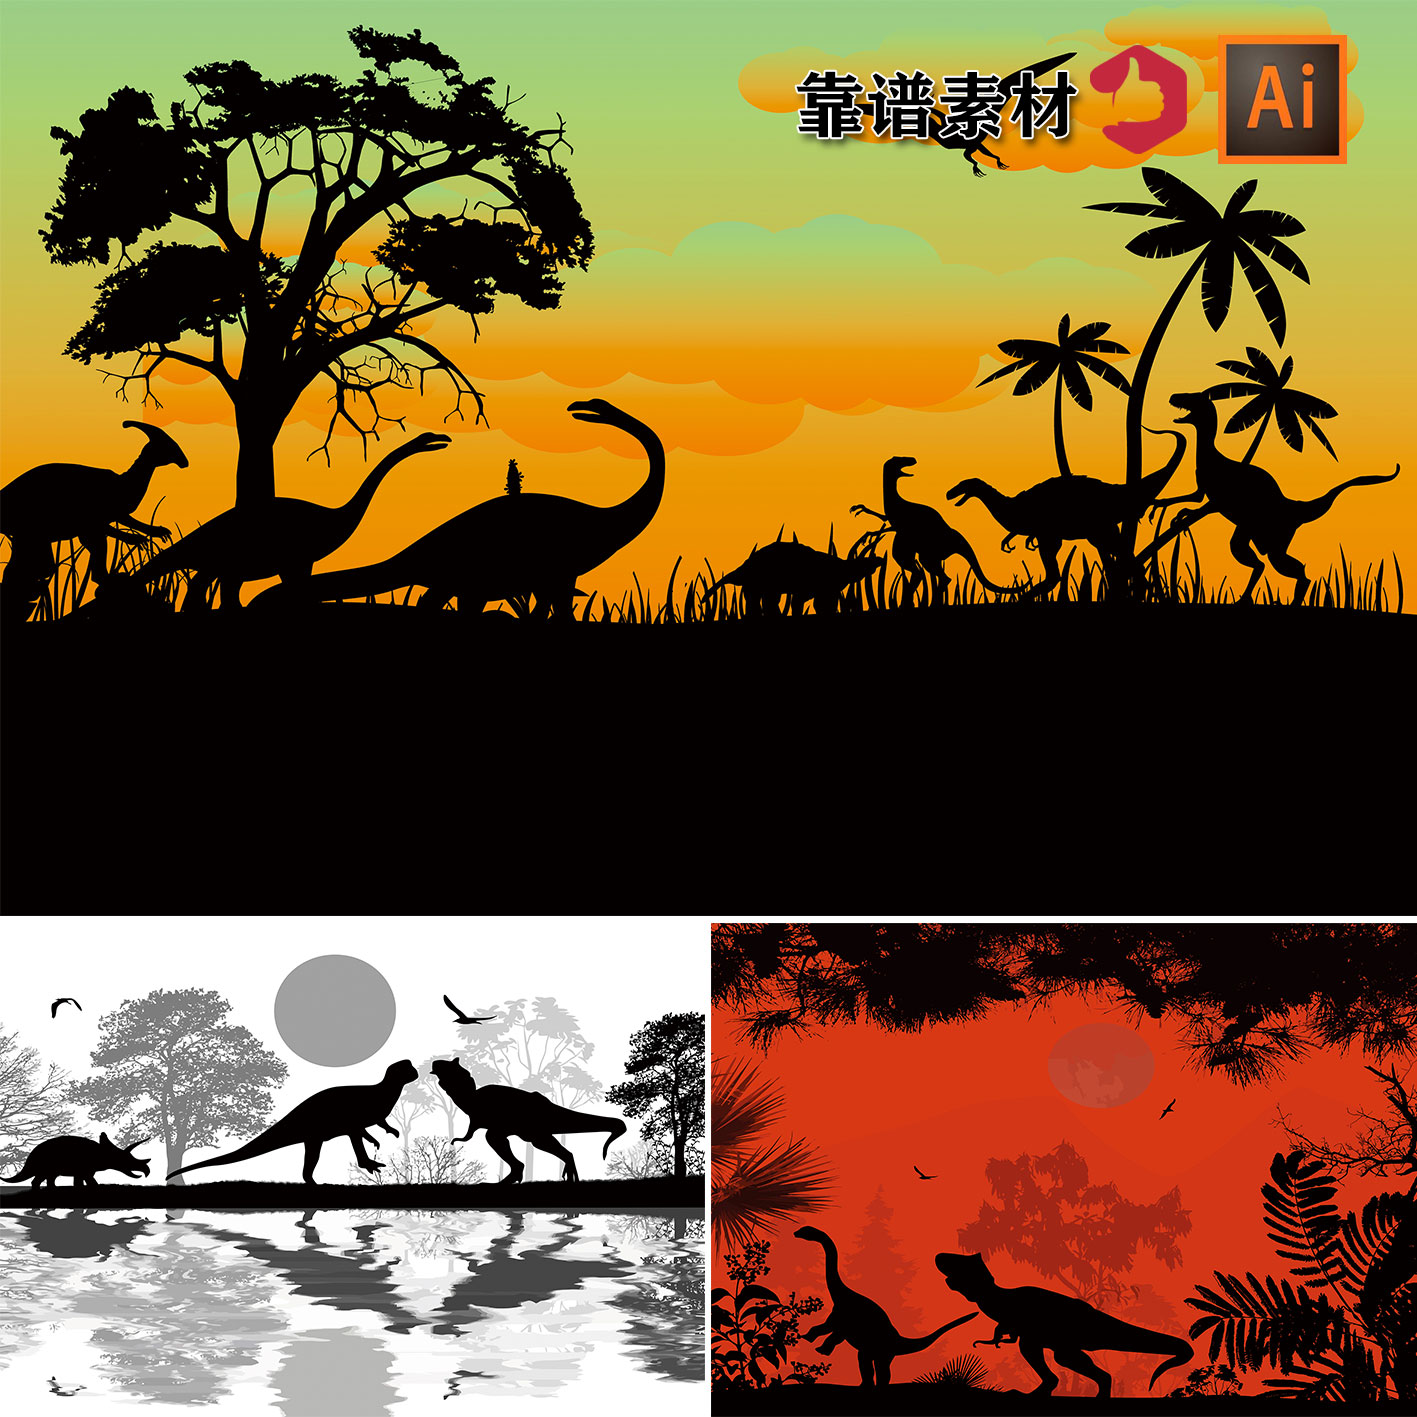 原始森林树林恐龙剪影黑白插画壁纸墙纸背景AI矢量设计素材